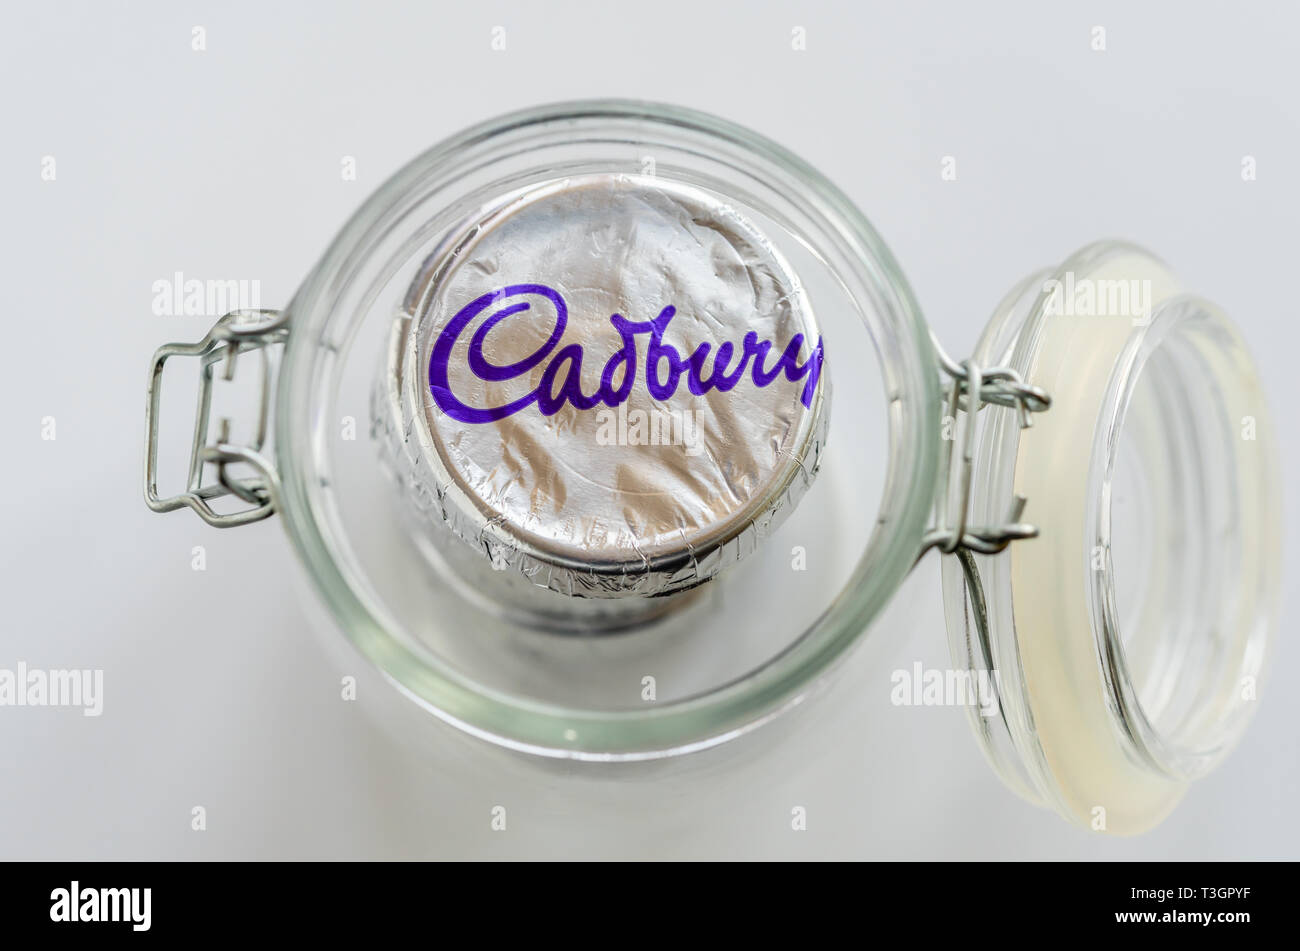 Runde Cadbury Kekse verpackt in silber Folie in einem offenen Glas Glas gegen den weißen Hintergrund Stockfoto